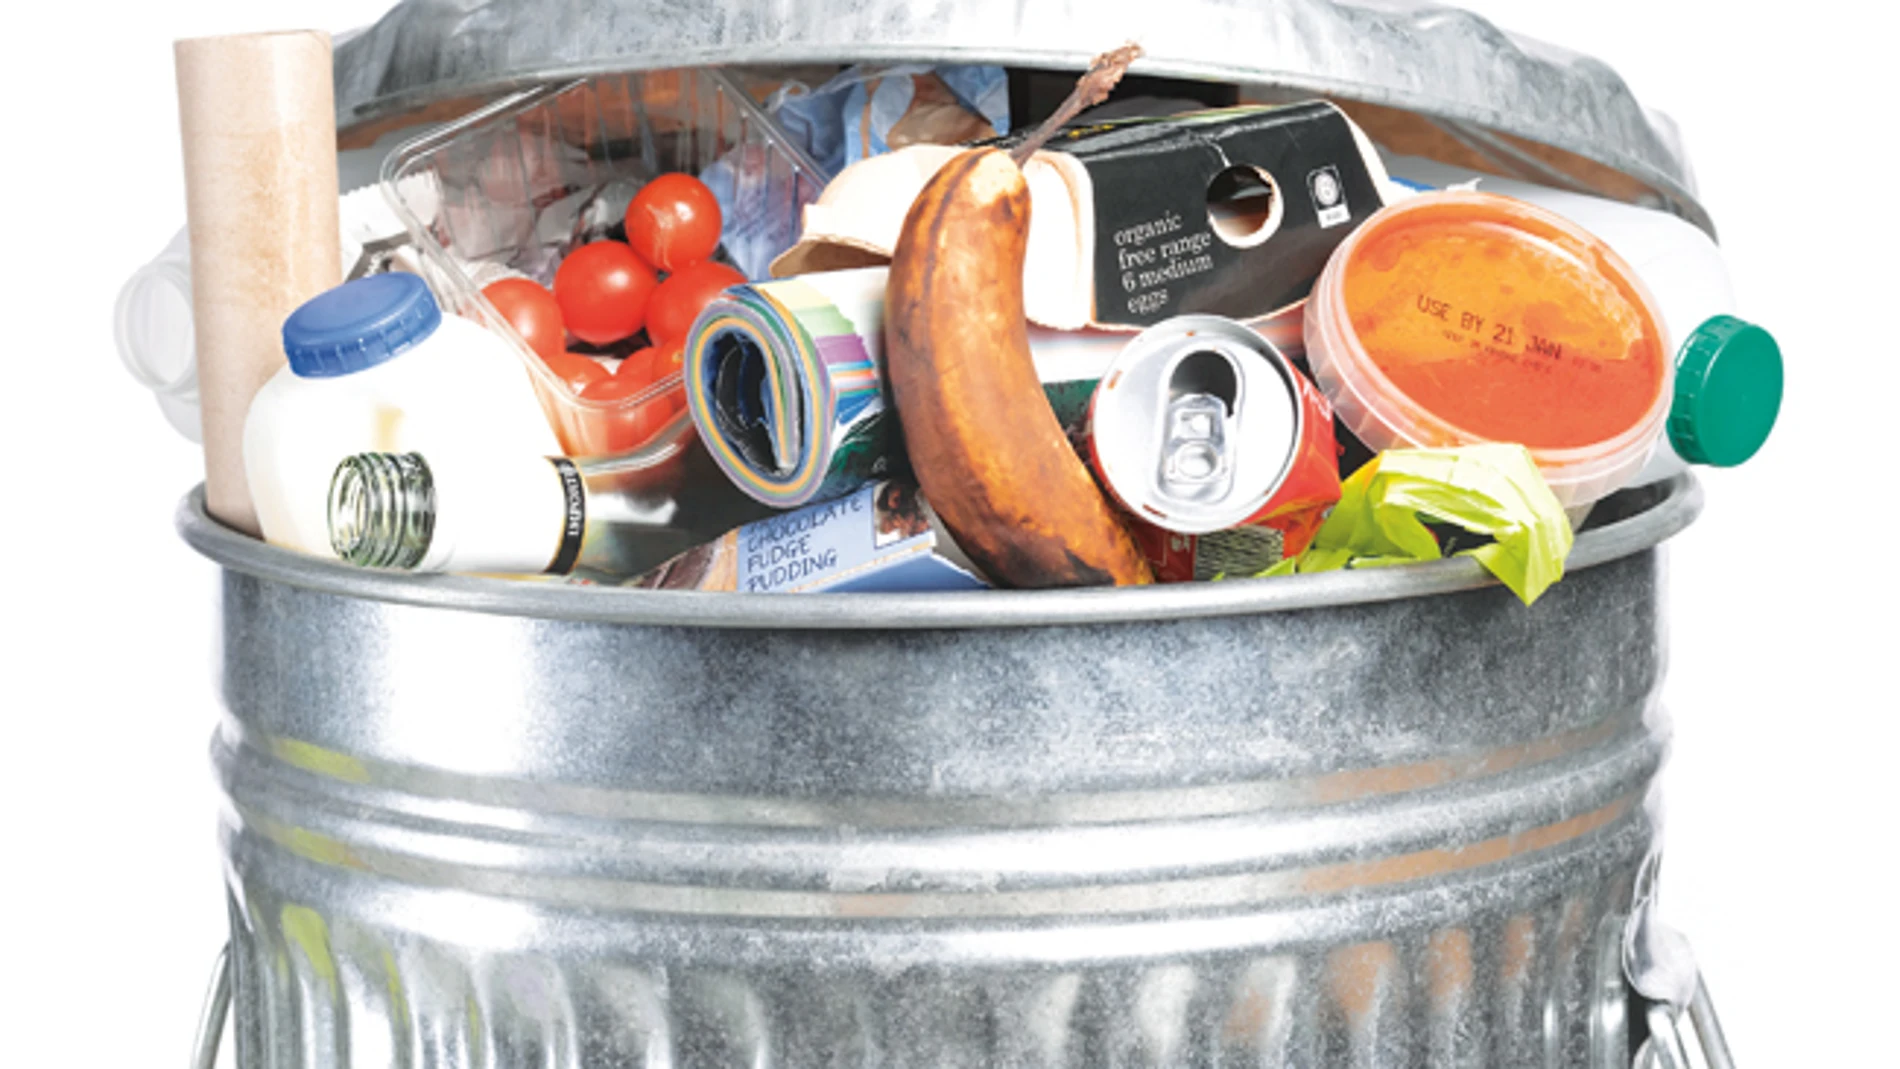 Desperdicio de comida: La mitad de los alimentos que compramos acaba en la basura